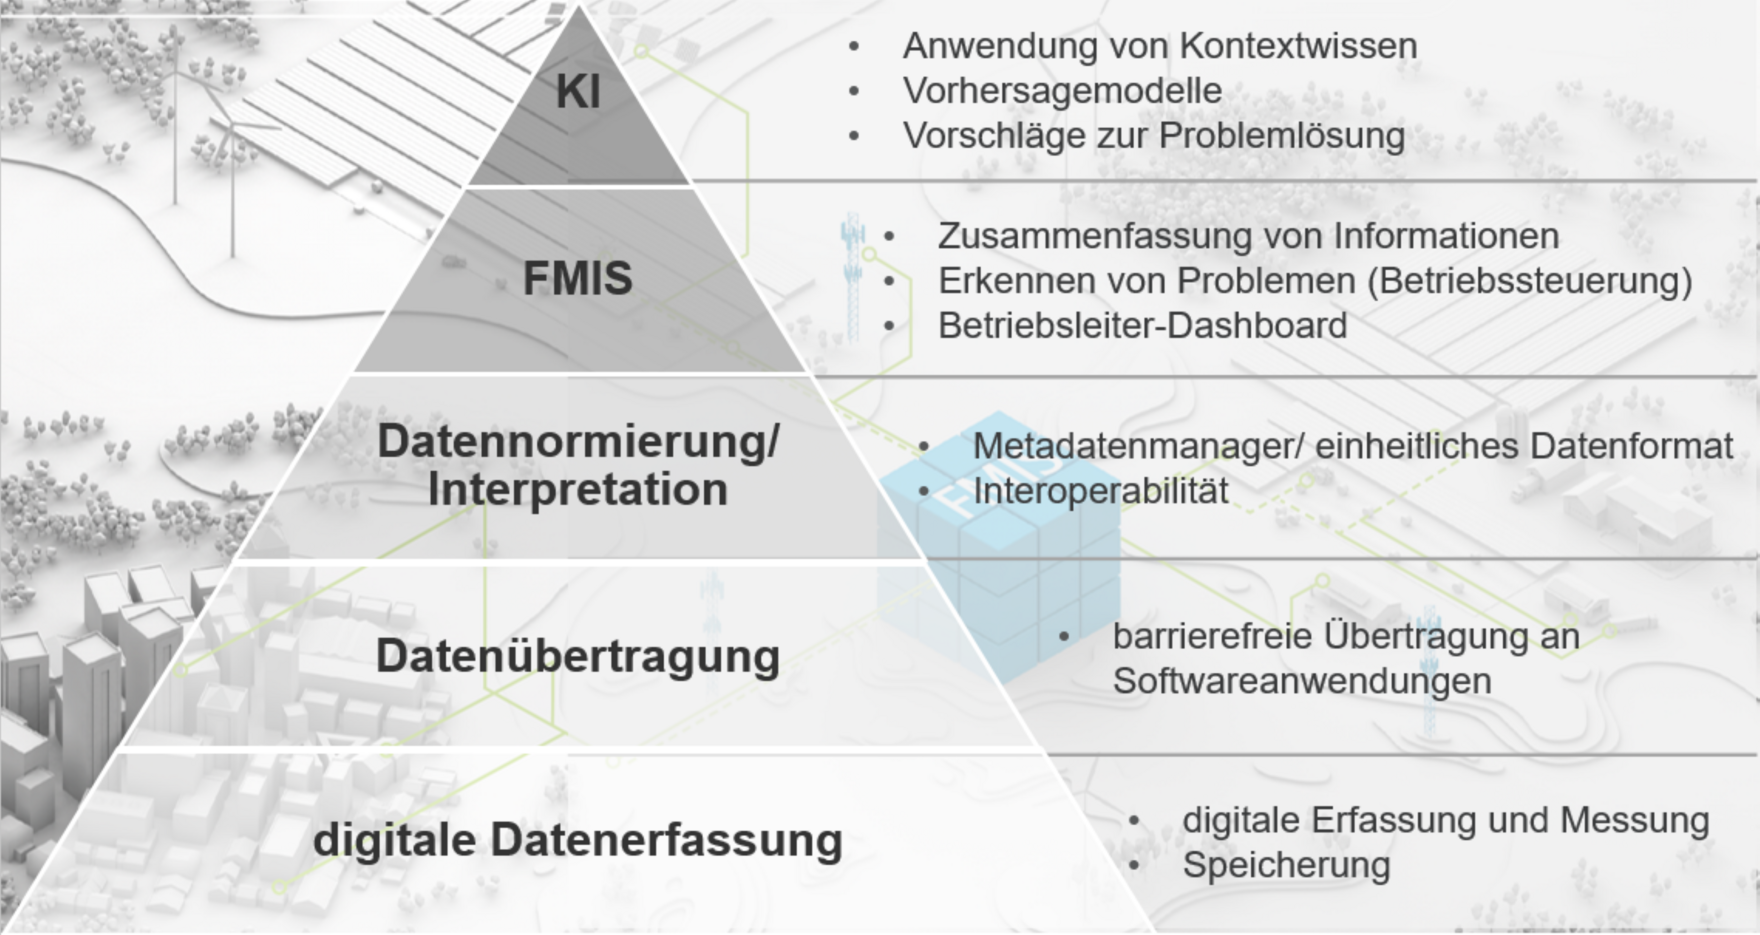 Pyramide - kennzeichnet den Weg von Datenerfassung, Datenübertragung, Datennormierung zu FMIS und weiter zu KI 